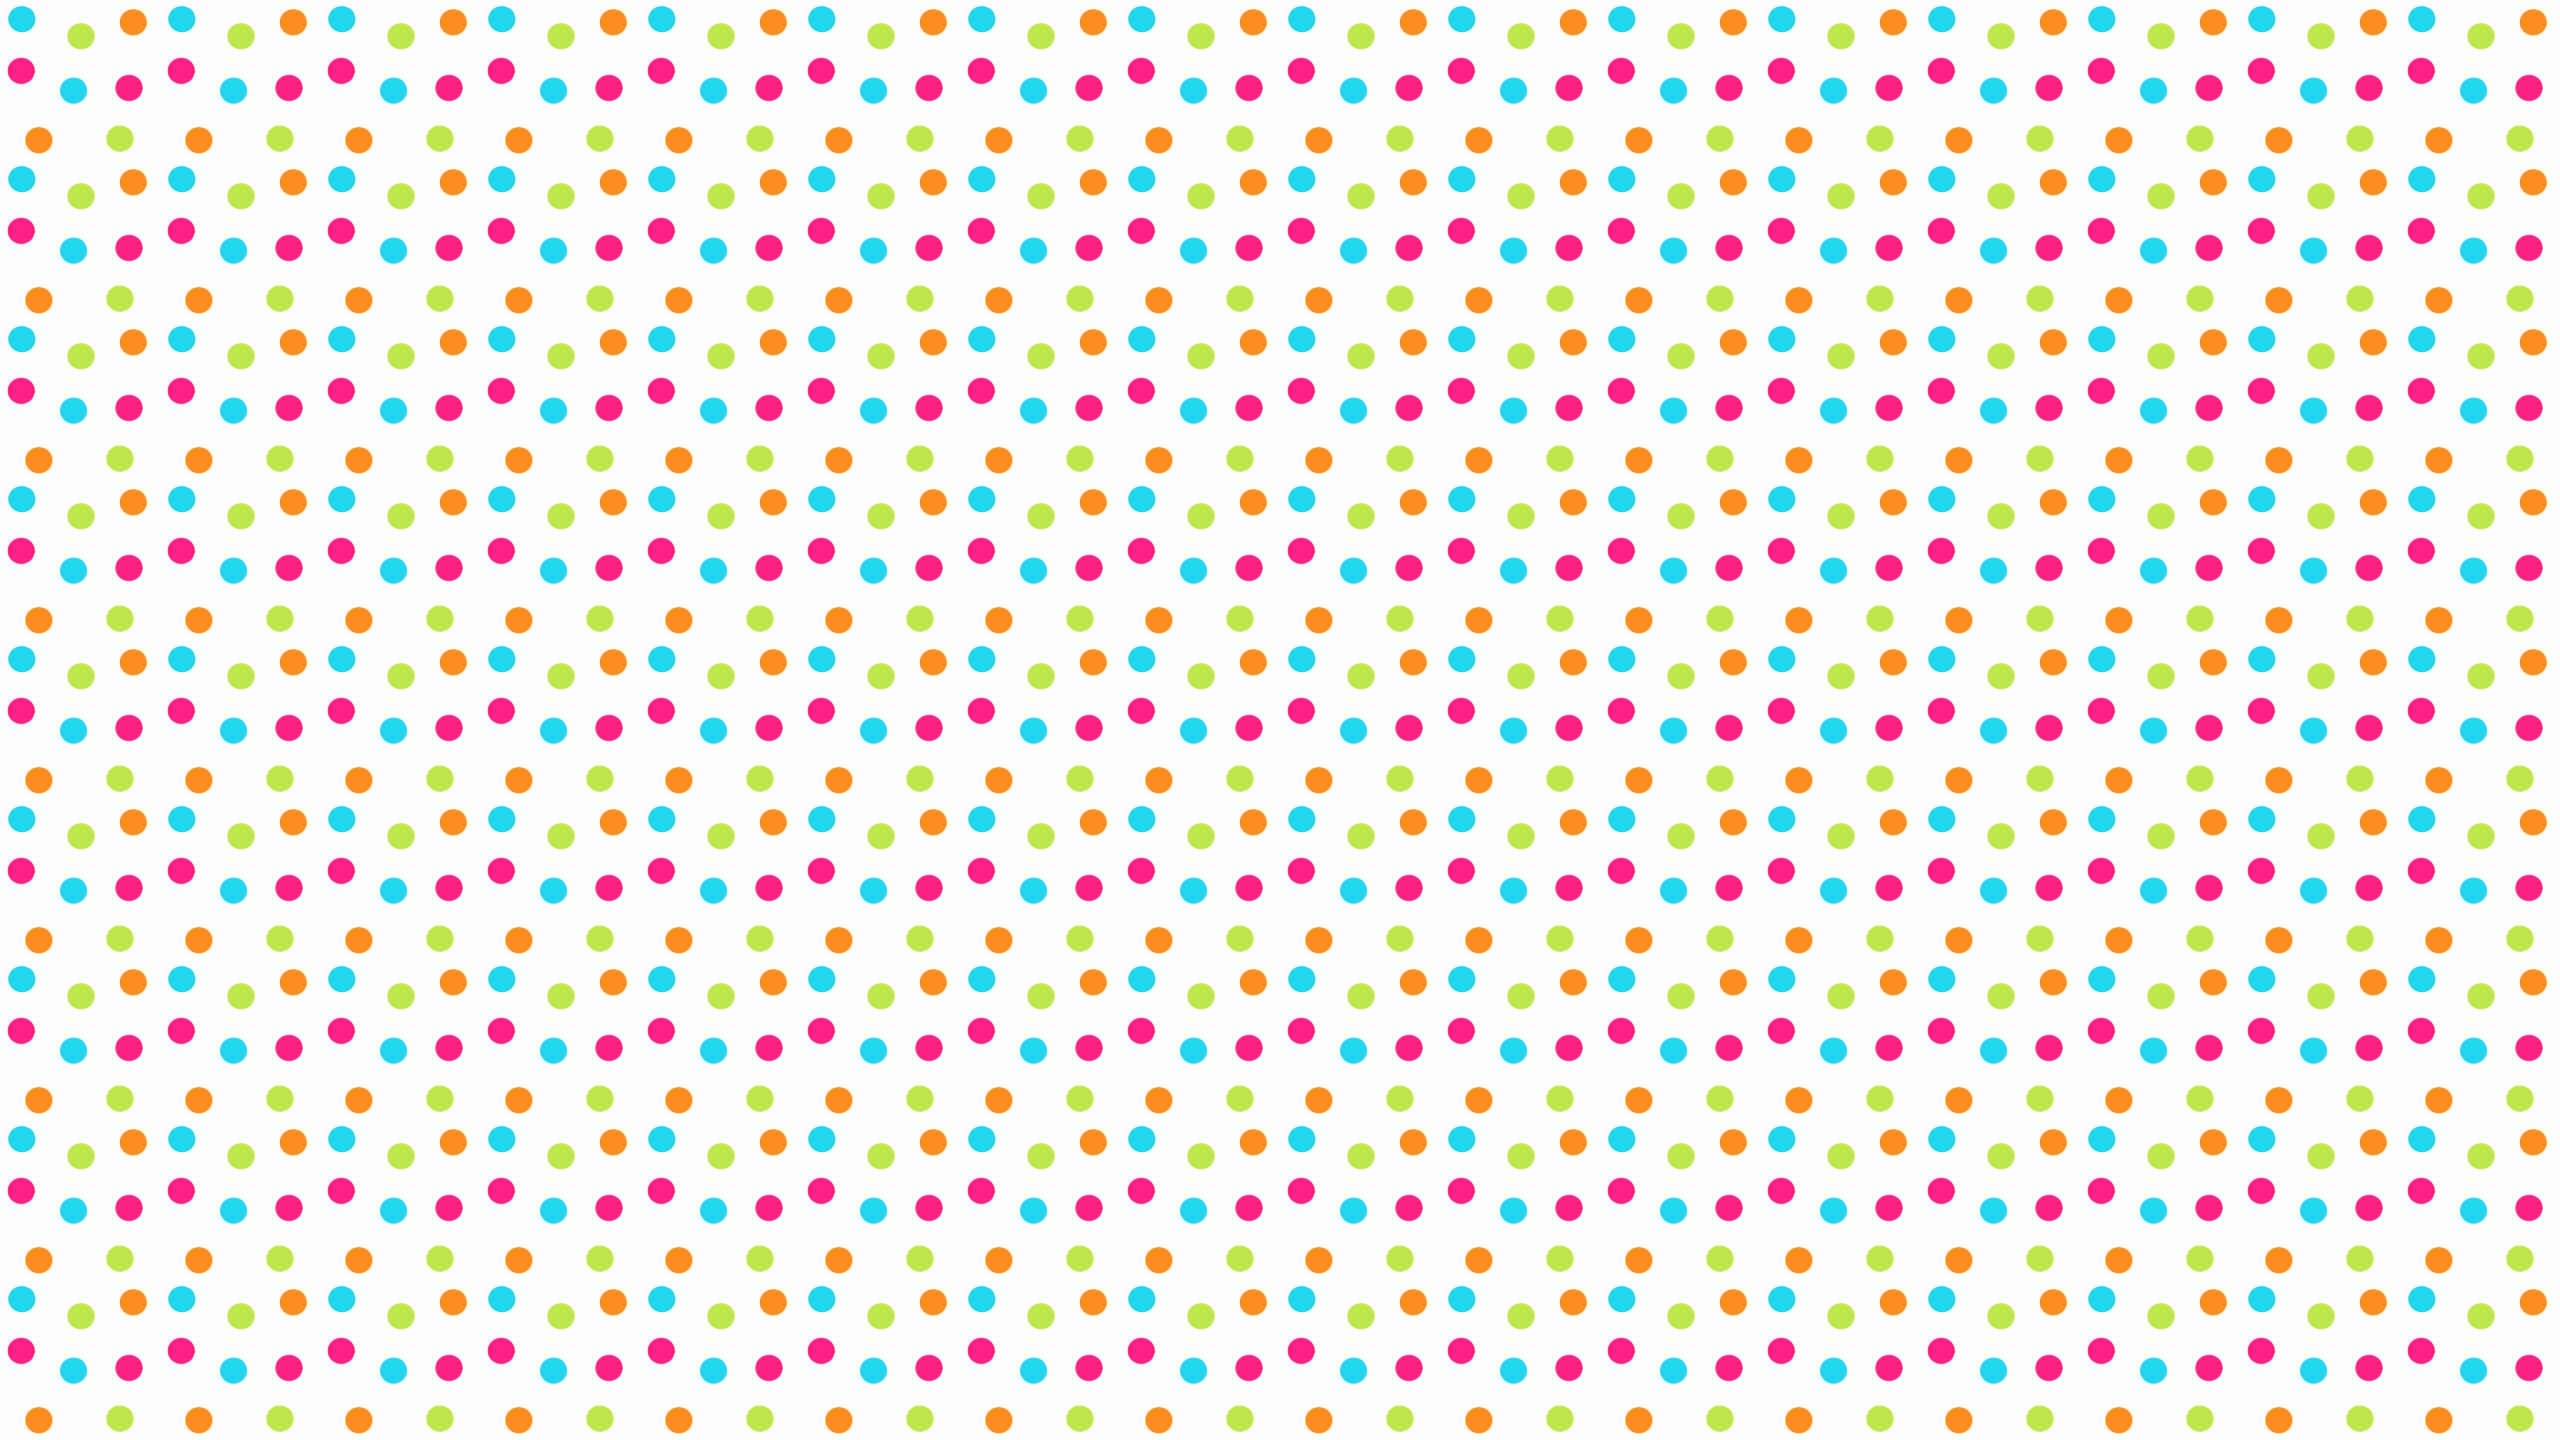 2560x1440 20+ Cool Polka Dot Wallpapers